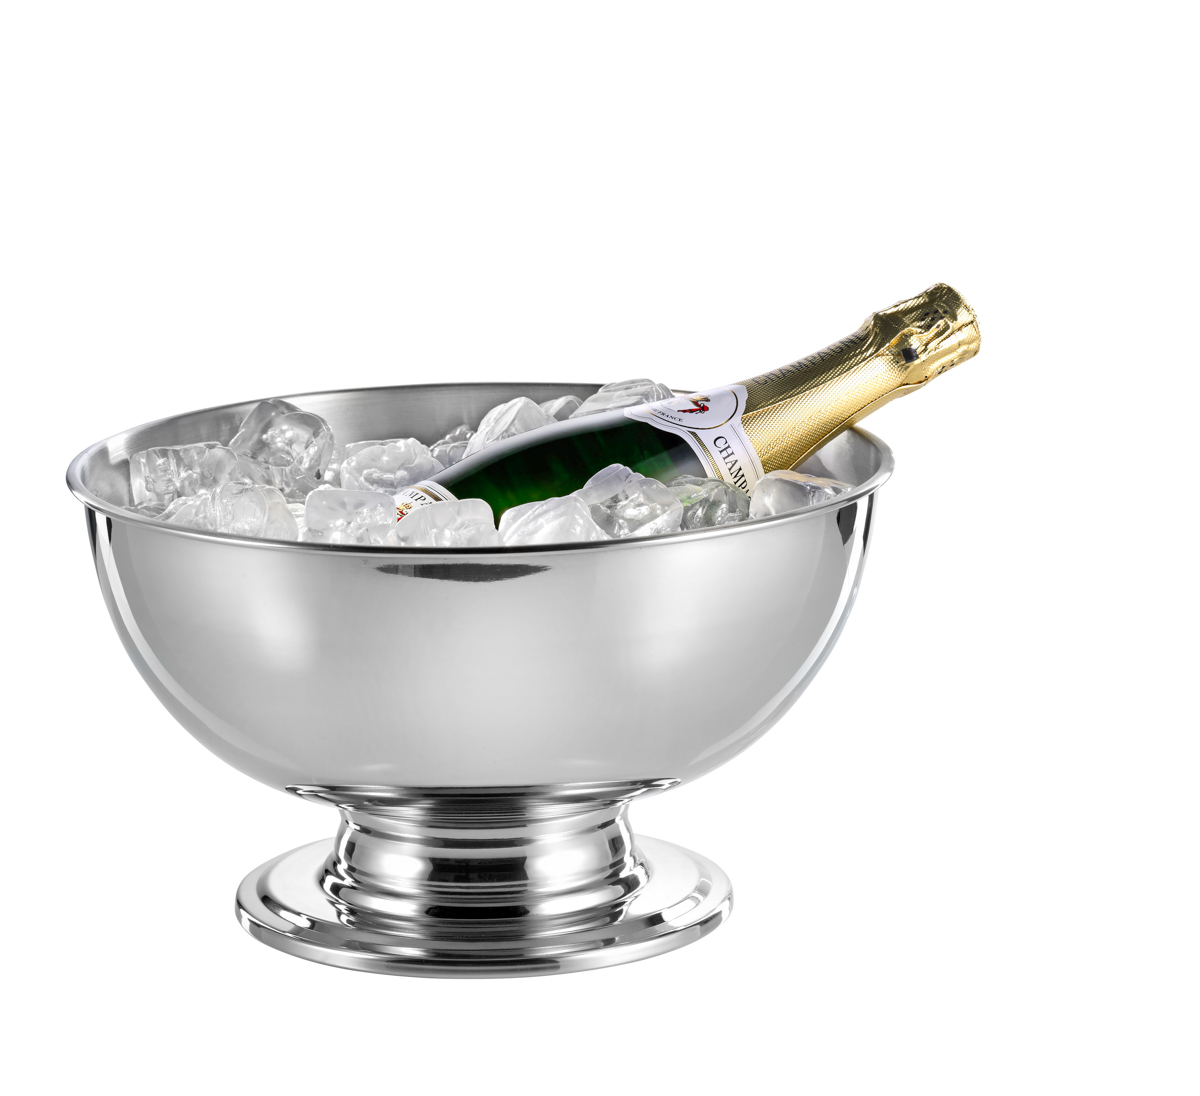 Champagner-Kühler PORTLAND, Edelstahl, 5 ltr.